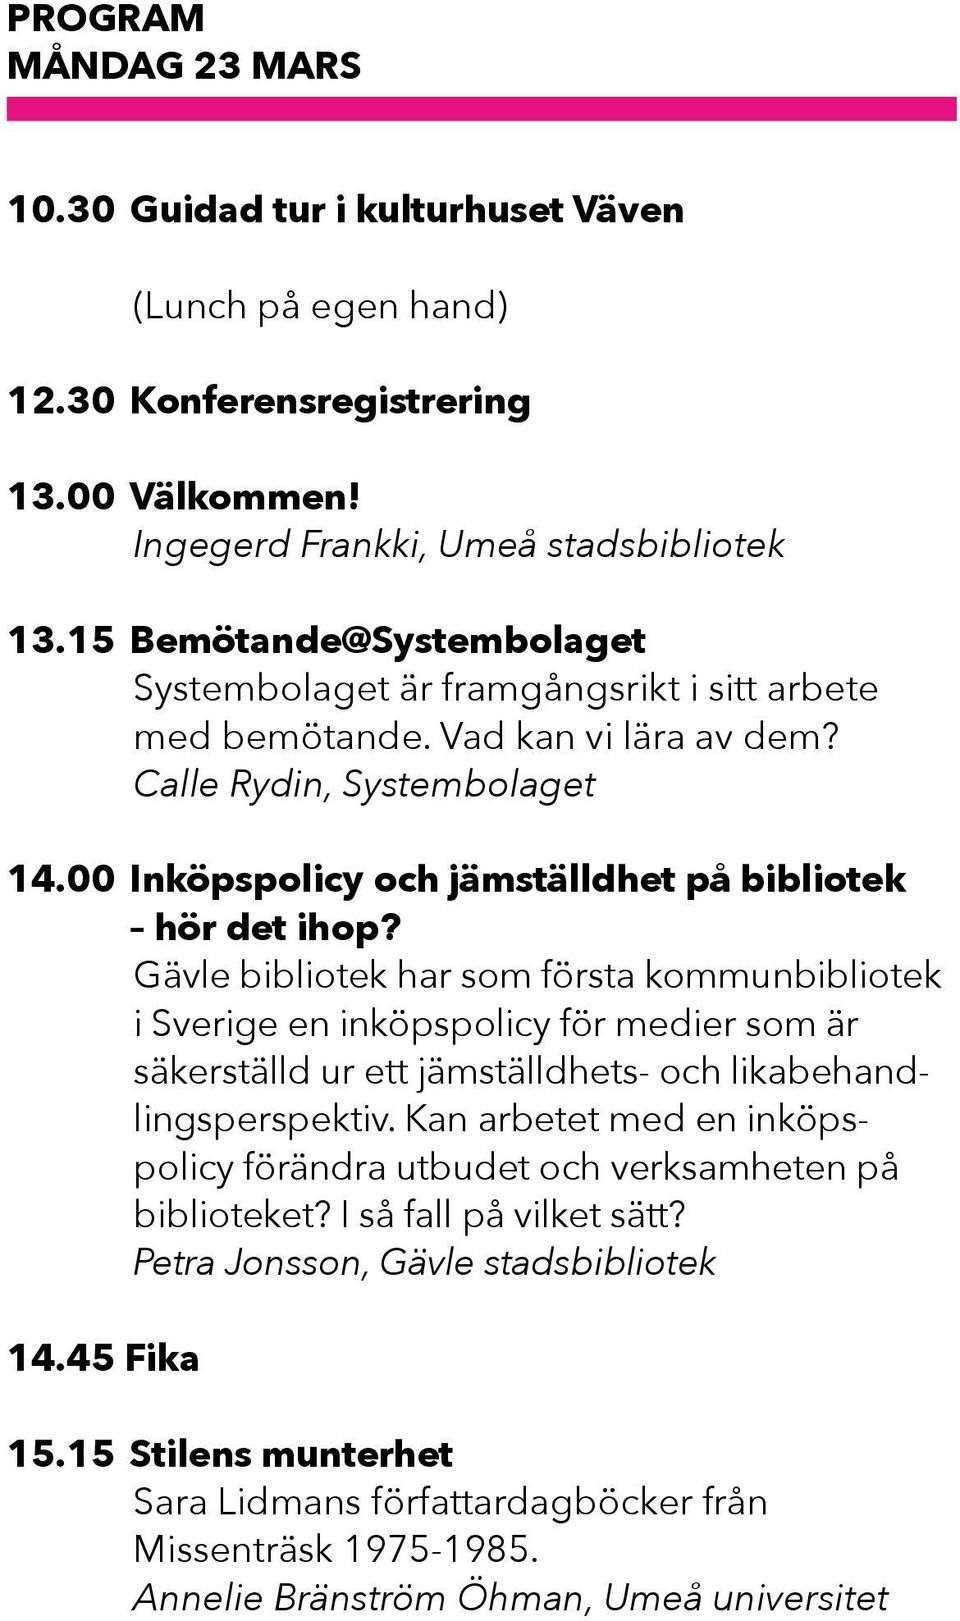 Gävle bibliotek har som första kommunbibliotek i Sverige en inköpspolicy för medier som är säkerställd ur ett jämställdhets- och likabehandlingsperspektiv.